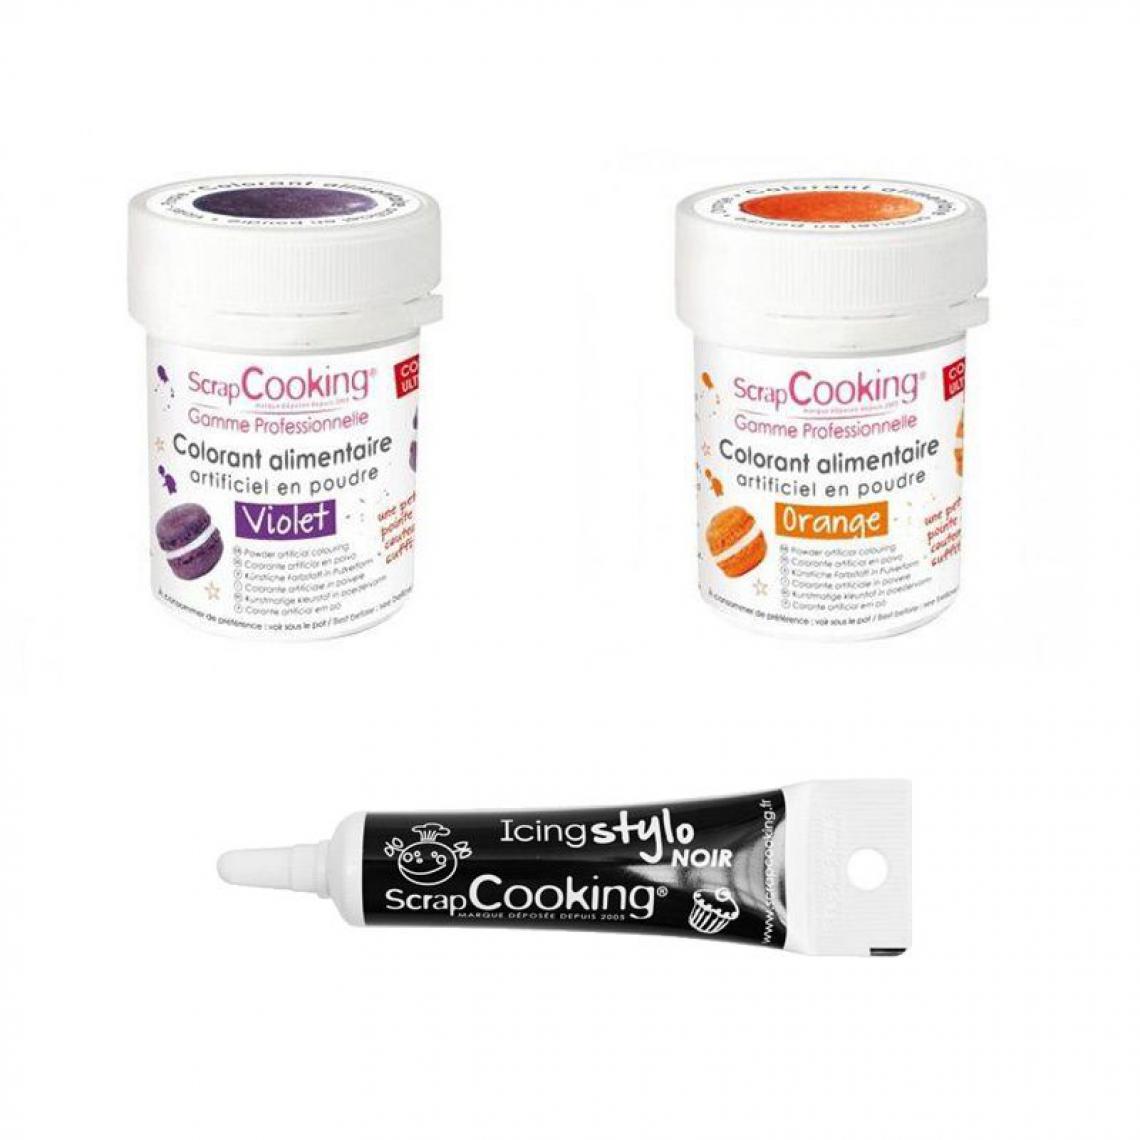 Scrapcooking - 2 colorants alimentaires orange-violet + Stylo glaçage noir - Kits créatifs